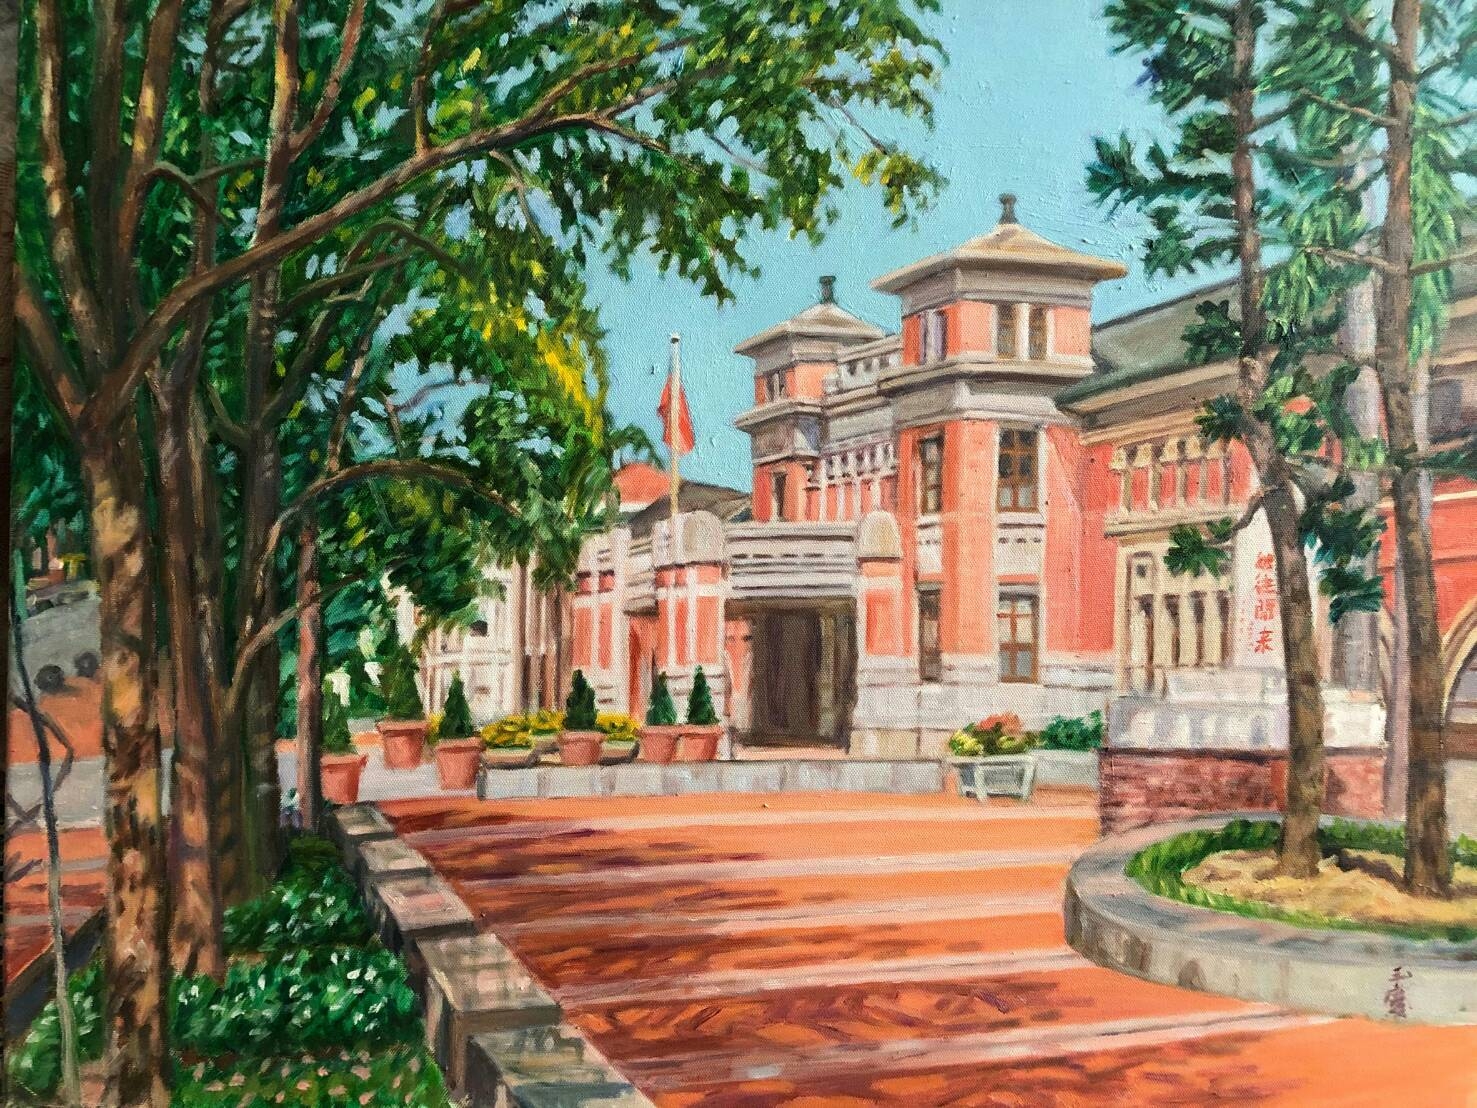 新竹市政府(原新竹州廳，1925年興建、國定古蹟、此建築具有歷史意義，是新竹市具有代表性地標)